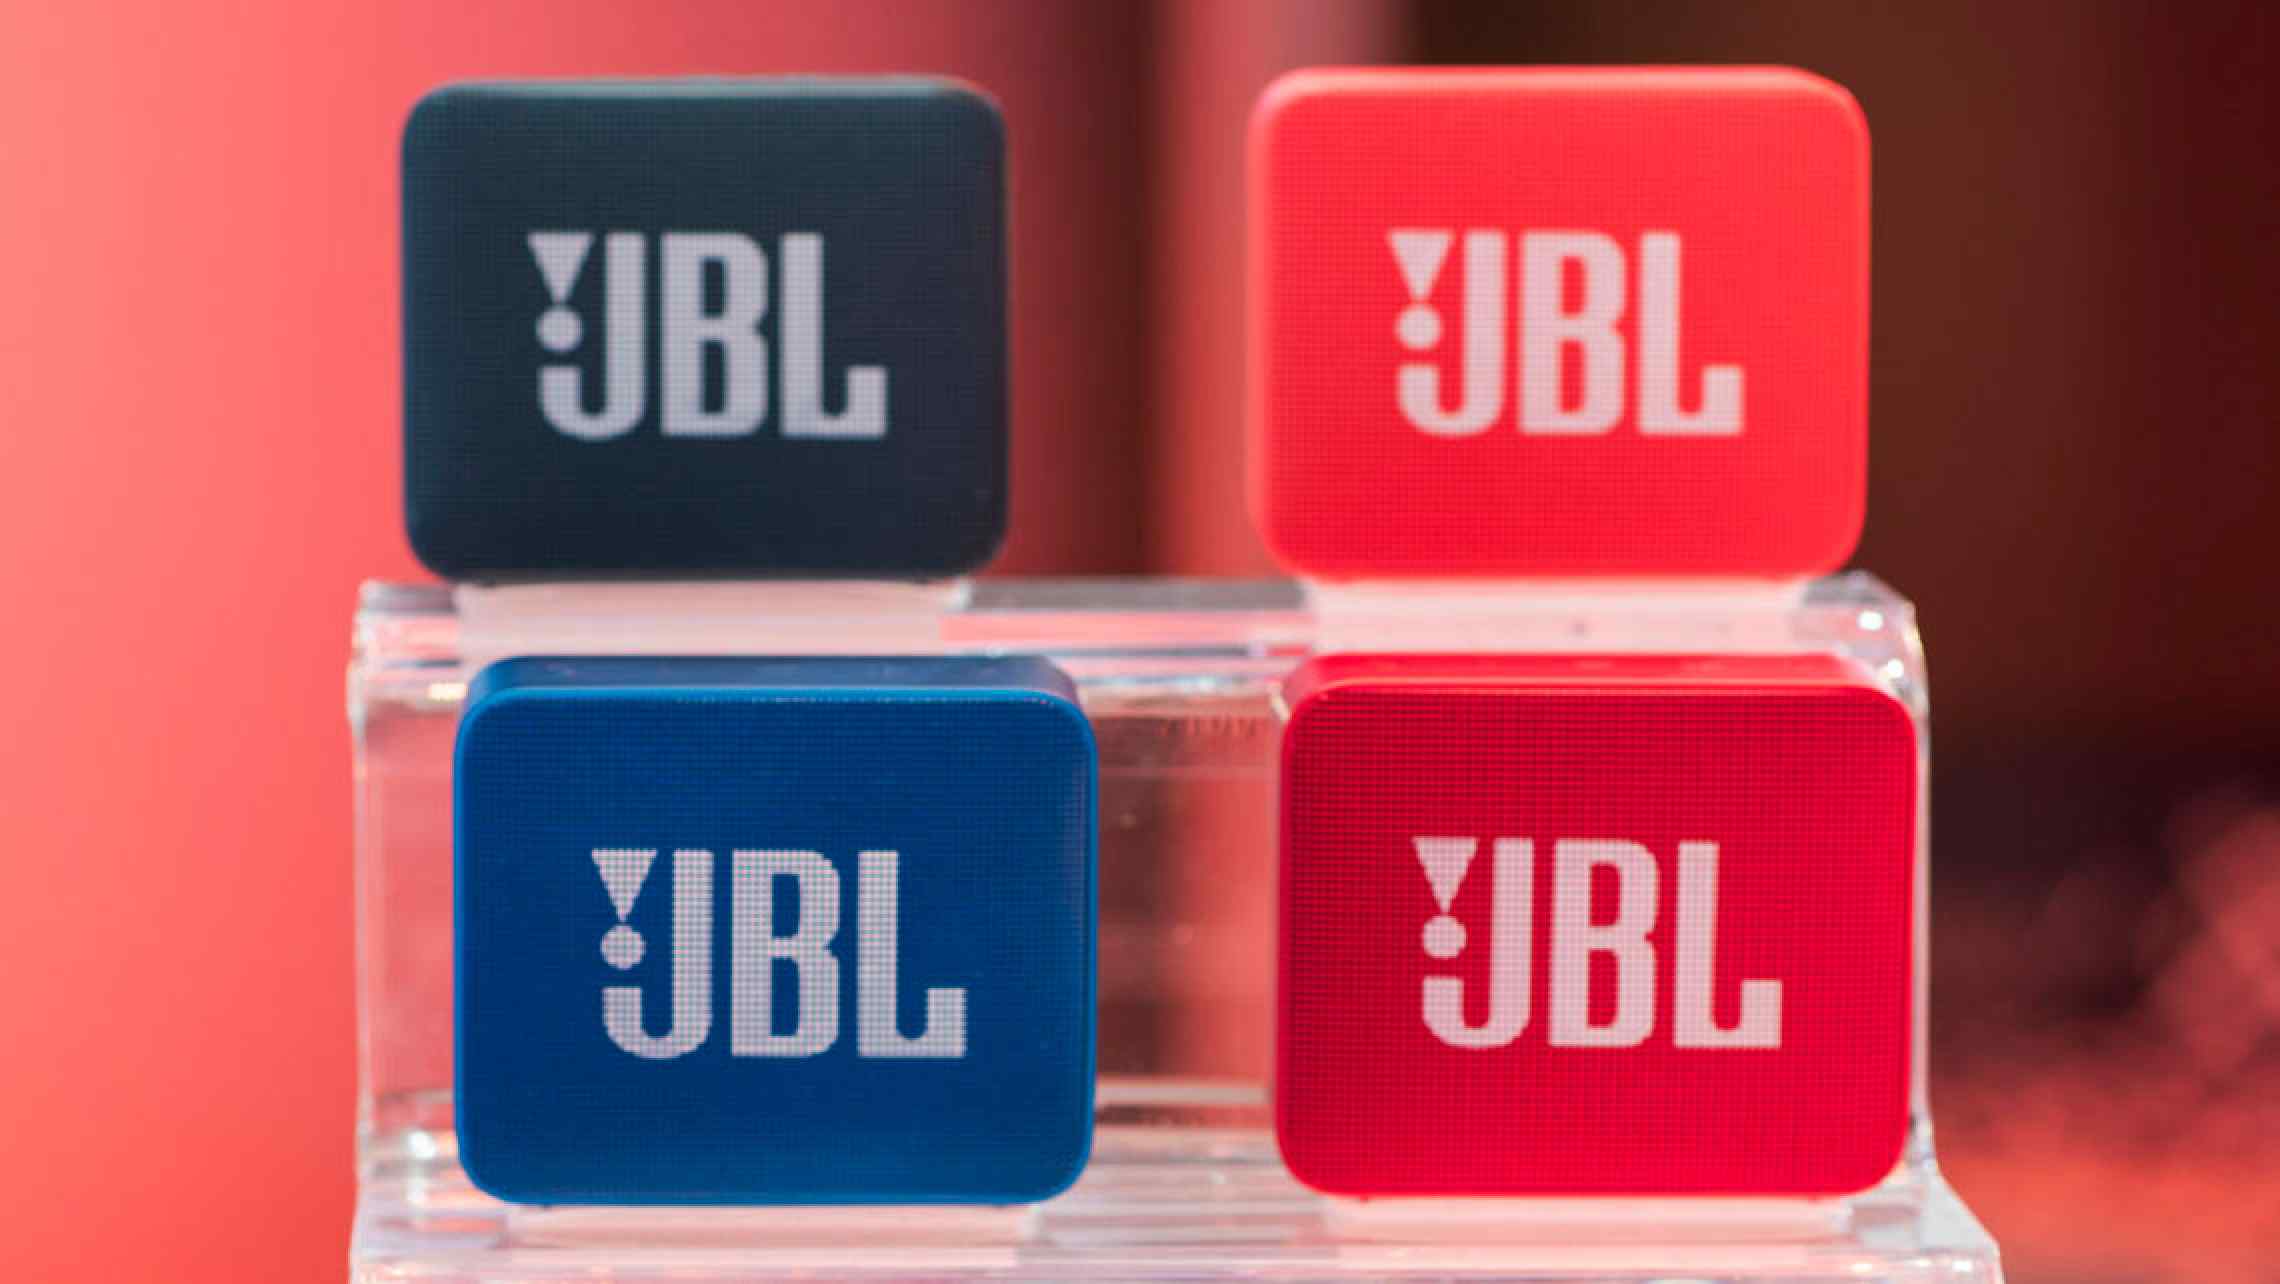 Đánh giá mọi mặt về loa JBL Go 2 - Nhỏ nhắn, đi đâu cũng được